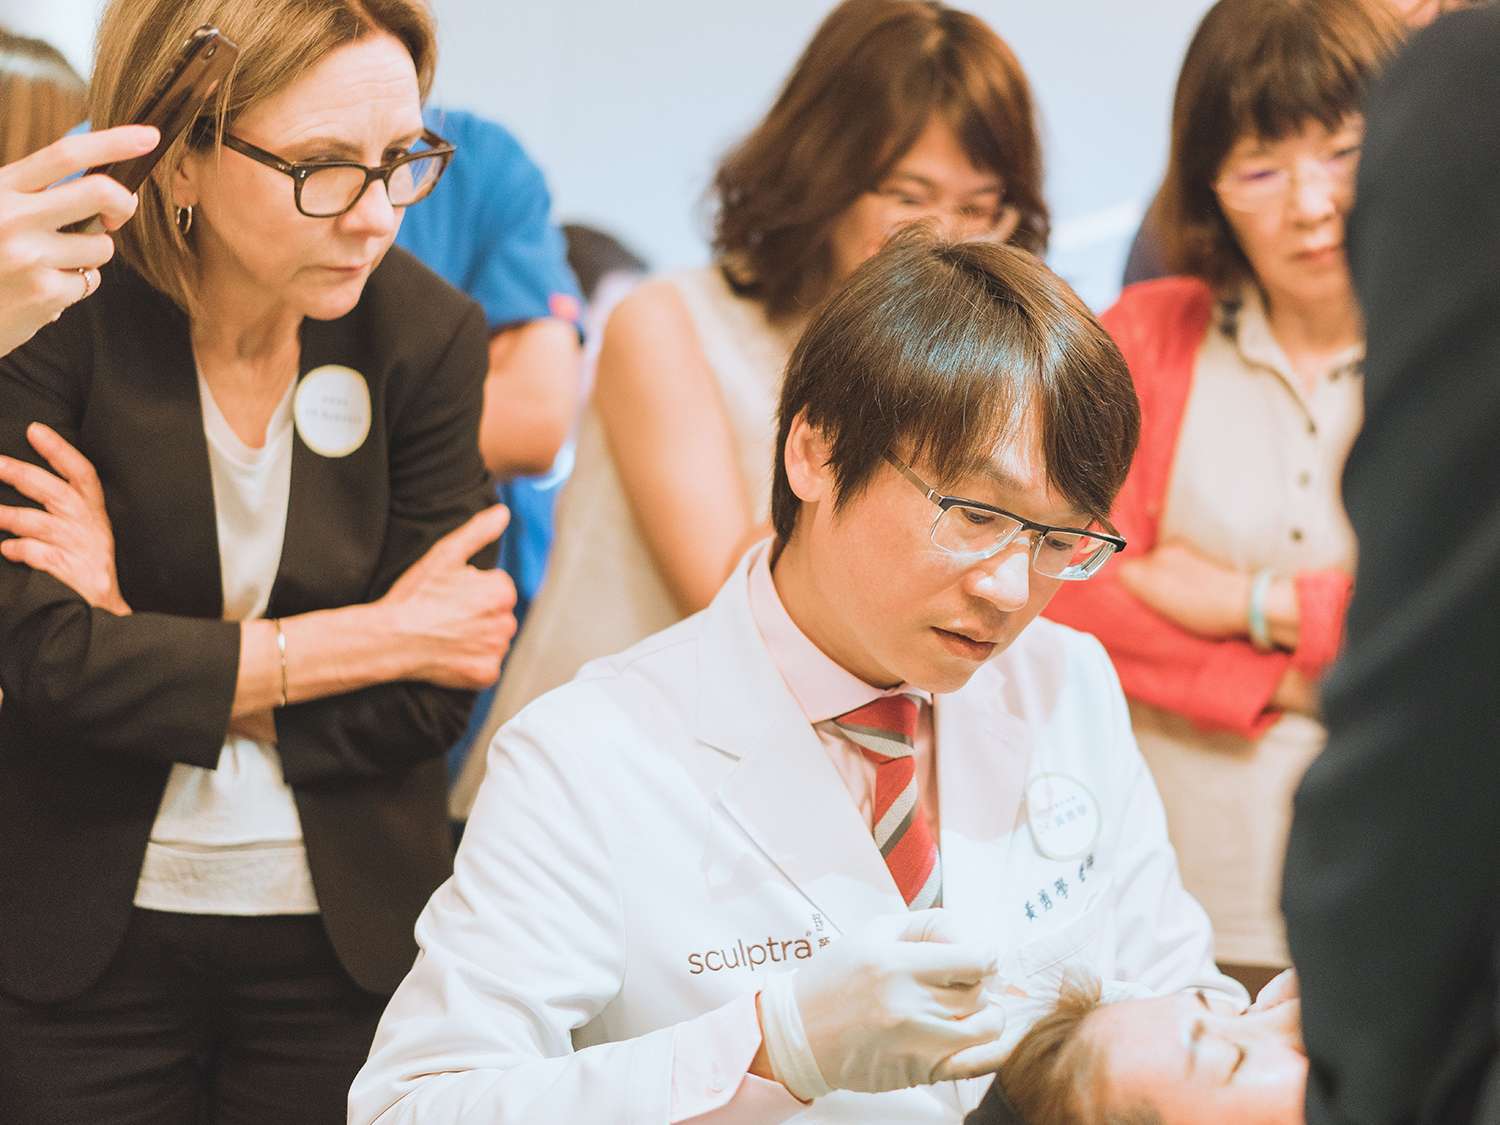 黃勇學醫師與Dr. Rebecca交流利用「安全性鈍針」和「舒顏萃」注射額頭的技法和心得